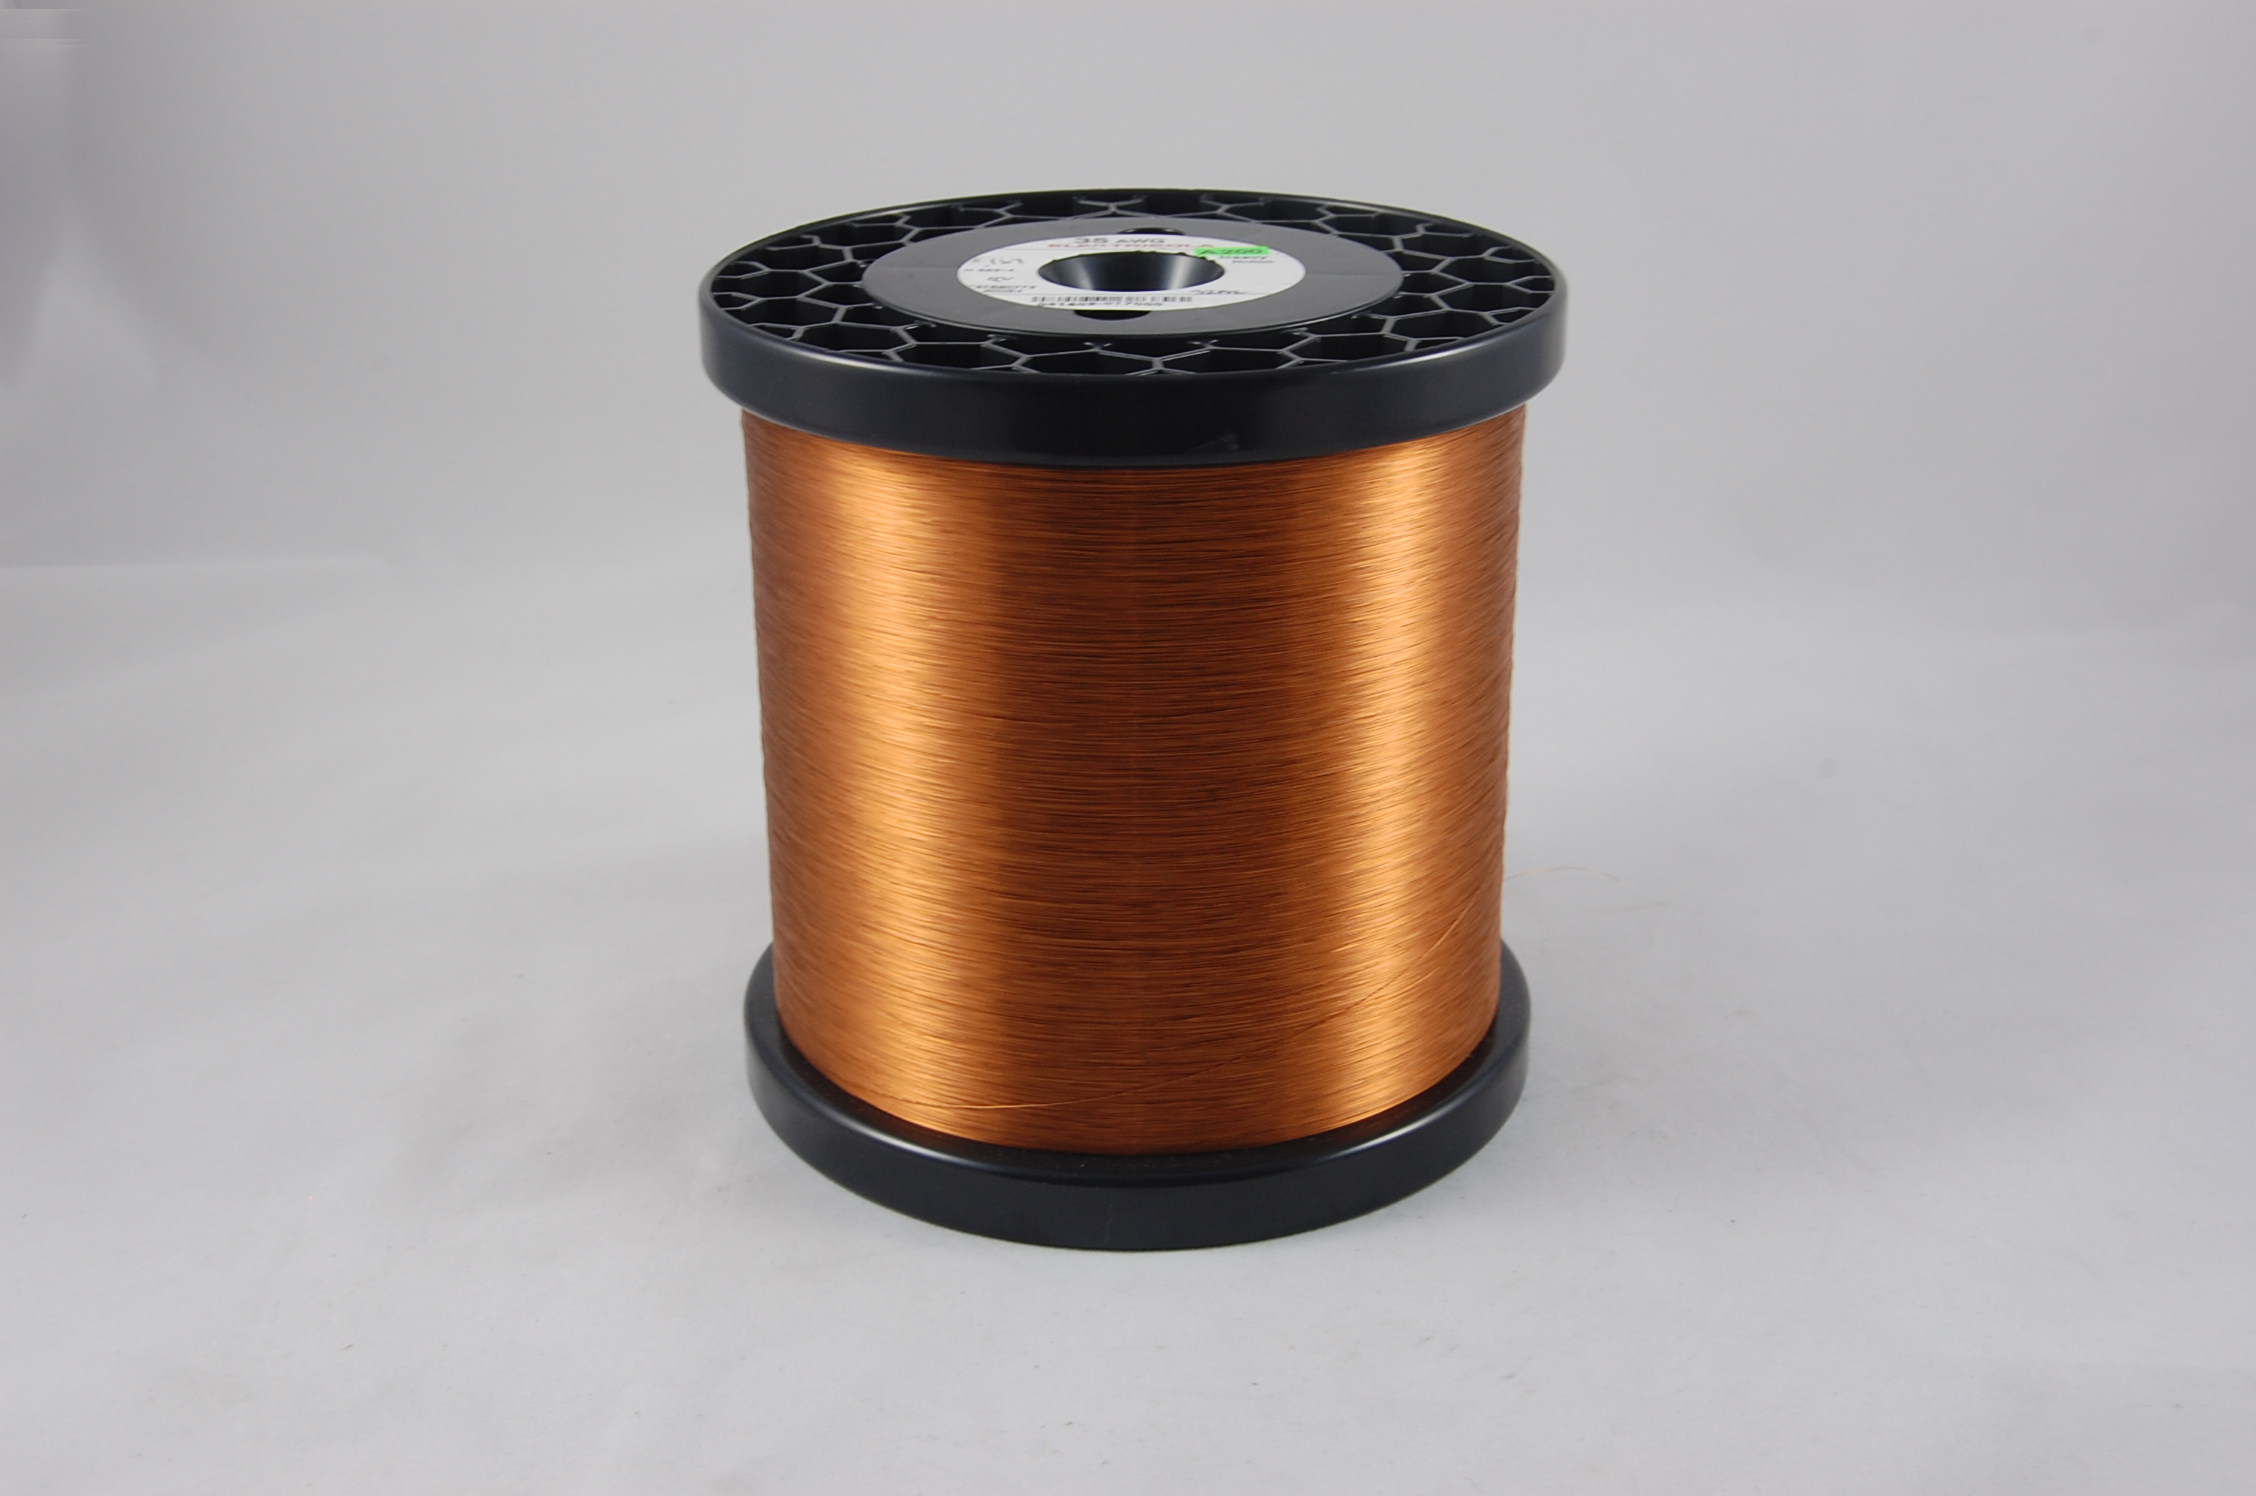 #38 Single Amidester 200 Round MW 74 Copper Magnet Wire 200°C, copper,  14 LB 6" x 6" spool (average wght.)